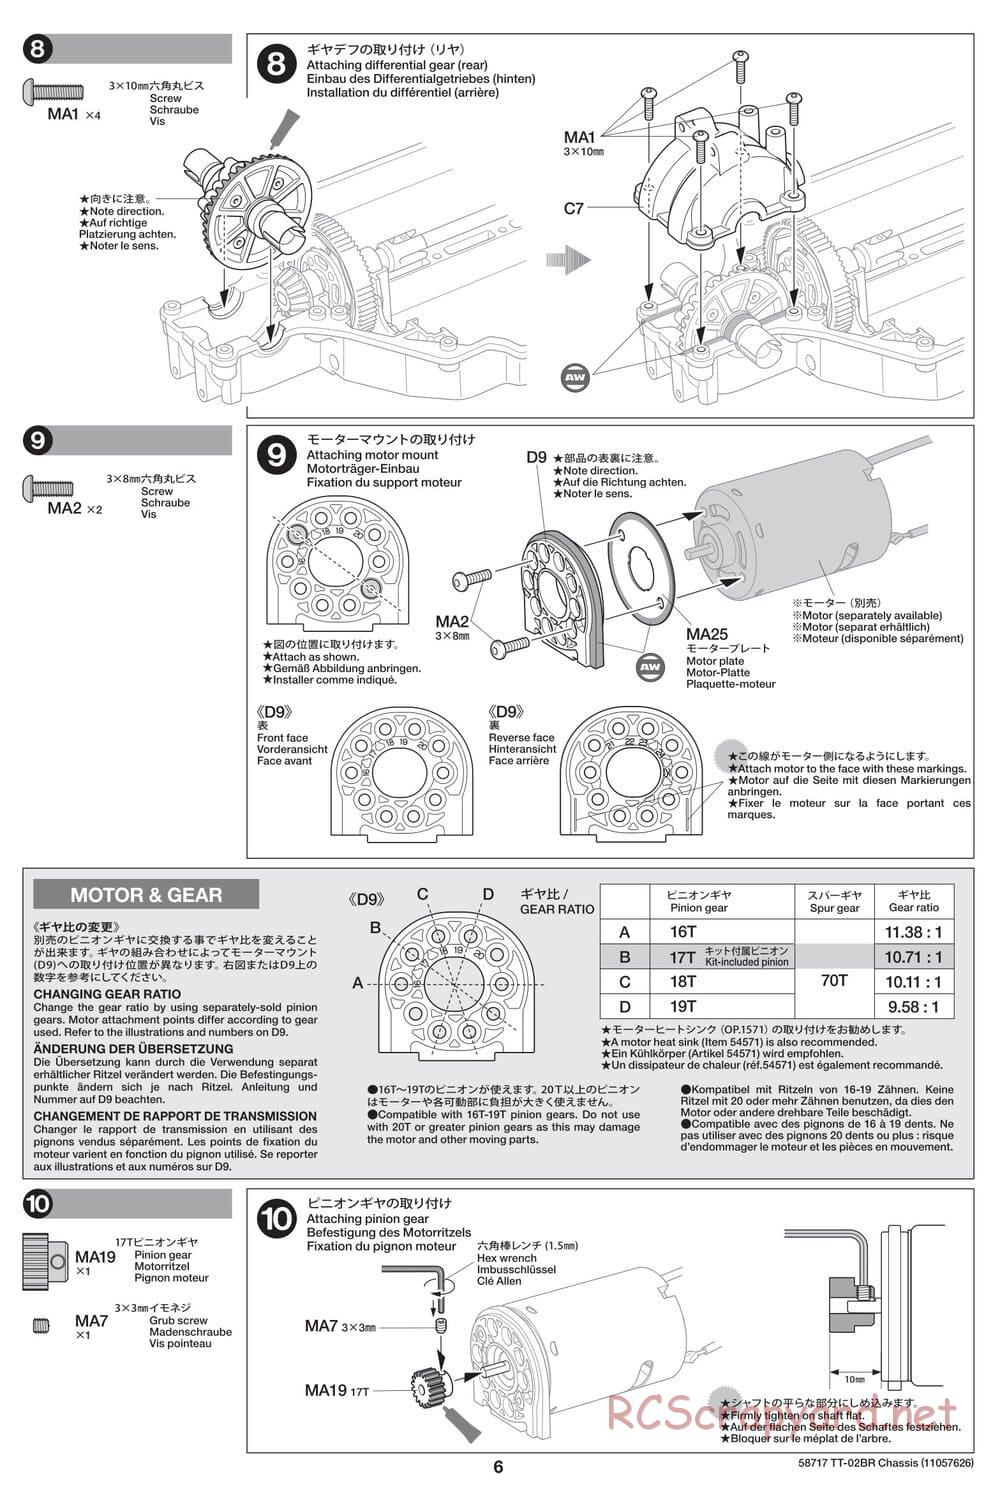 Tamiya - TT-02BR Chassis - Manual - Page 6